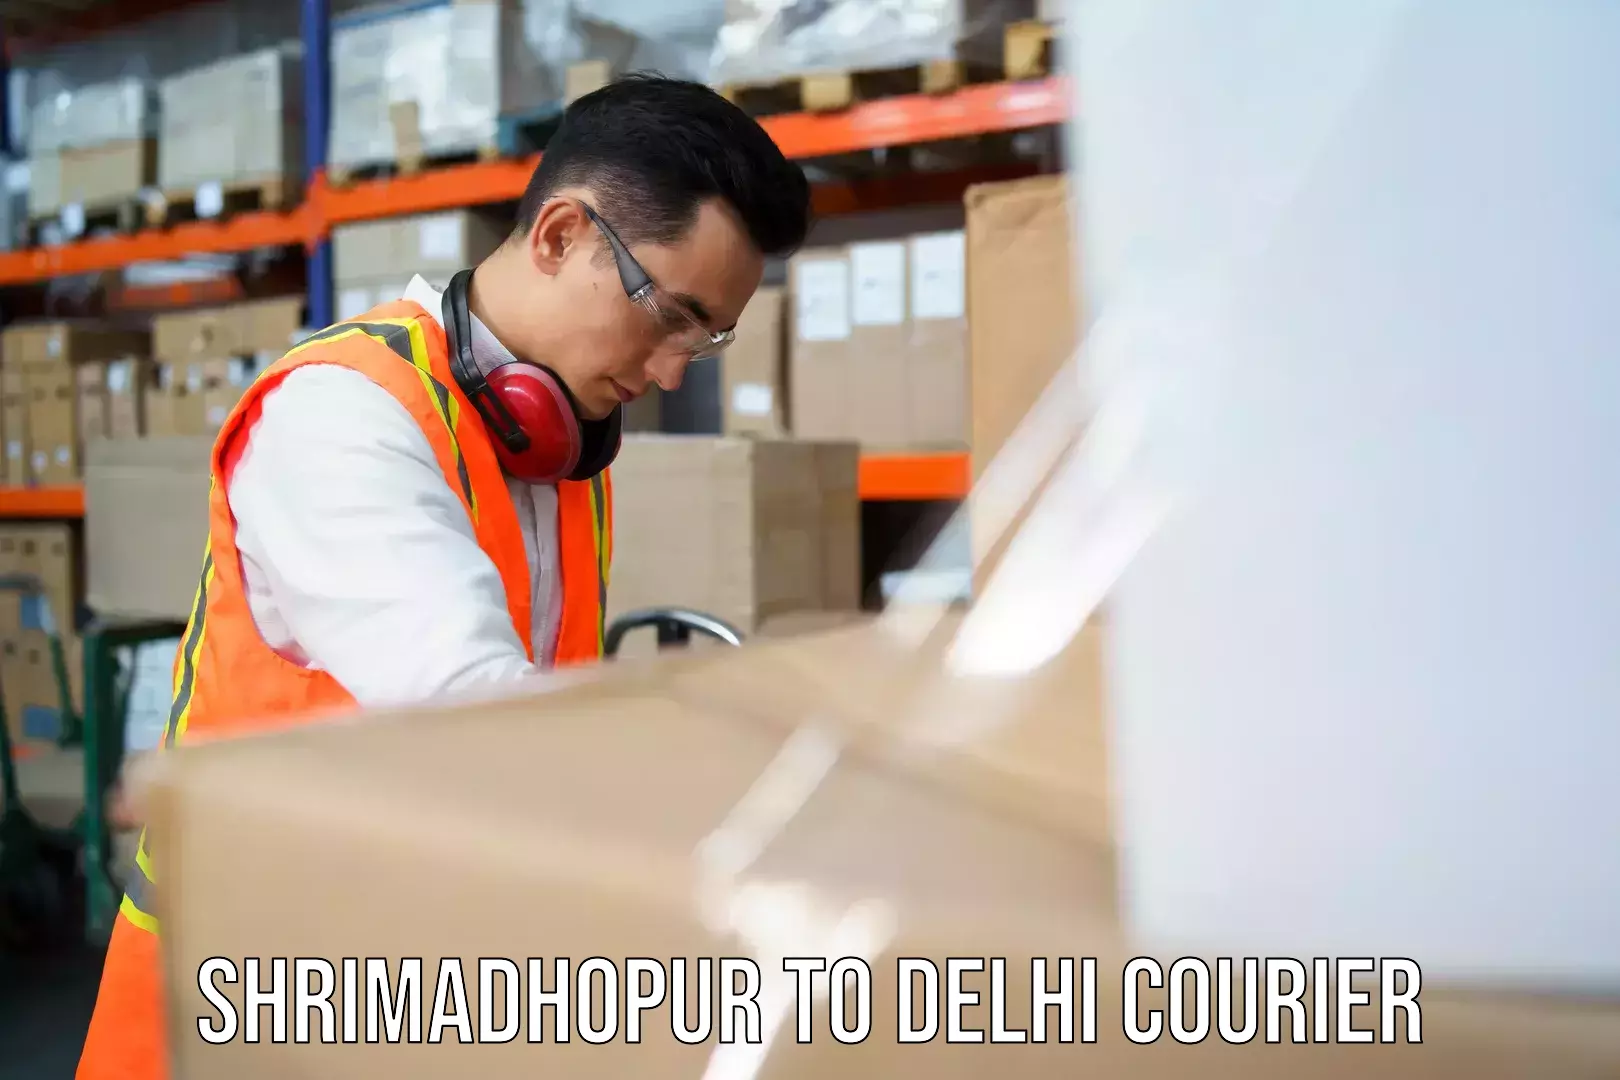 Professional parcel services Shrimadhopur to Delhi